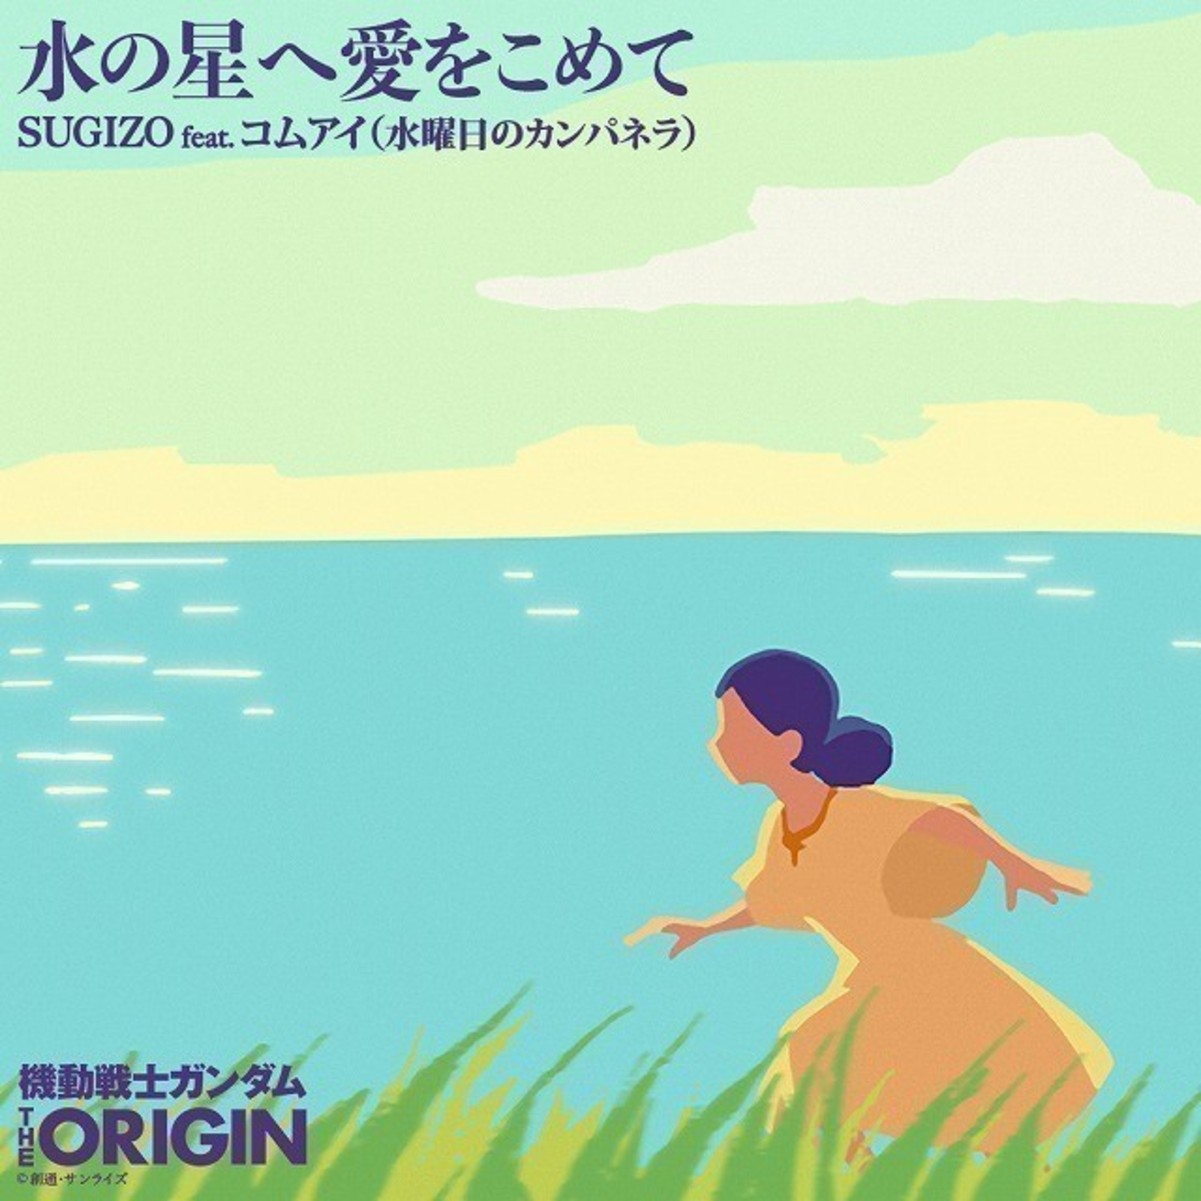 ガンダム The Origin Sugizoアレンジによるed主題歌2曲がフルサイズでダウンロード配信 映画ニュース 映画 Com